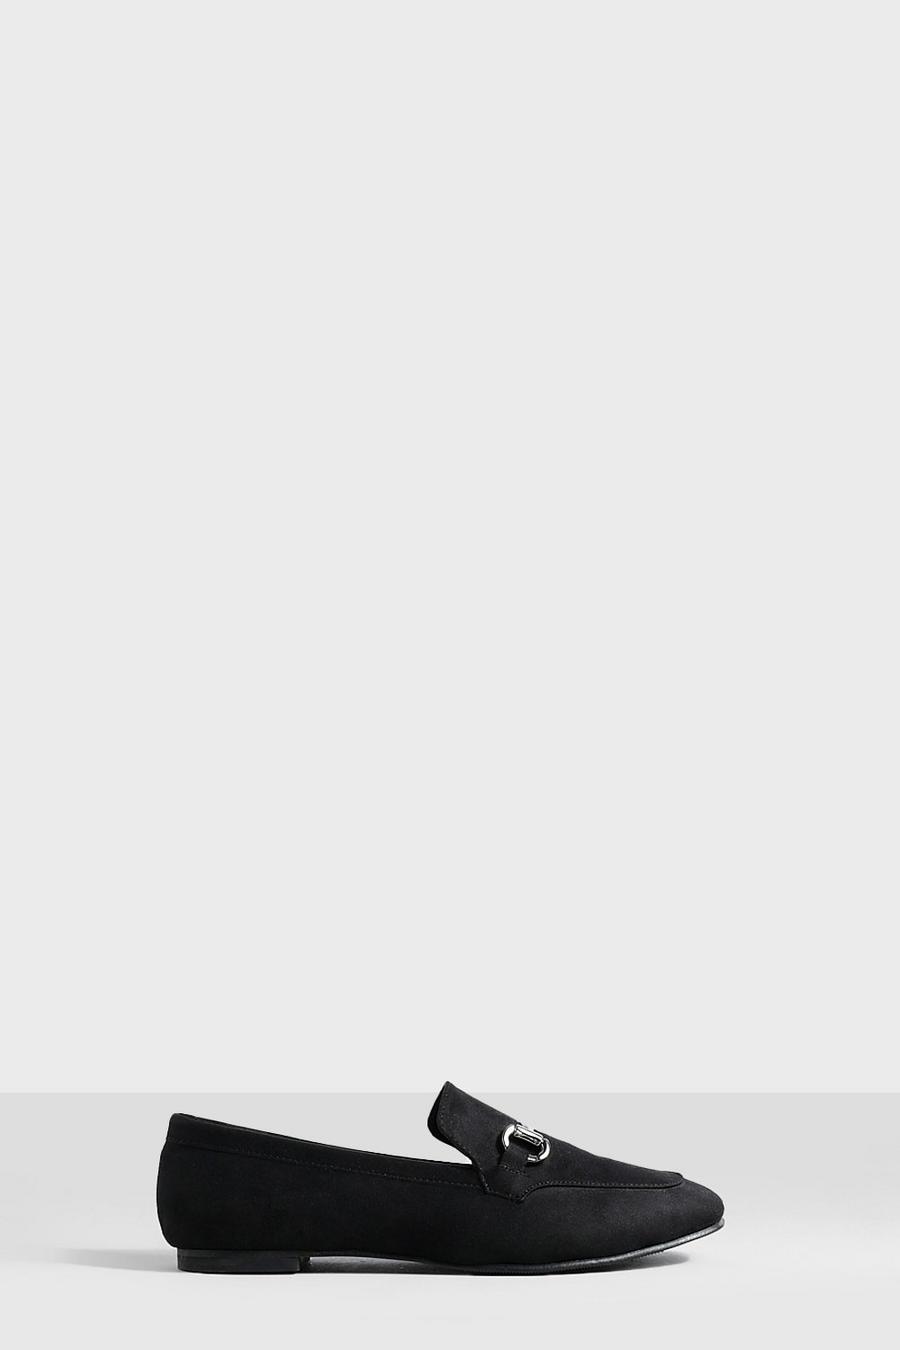 Black svart Loafers med fyrkantig tå och metalldetaljer